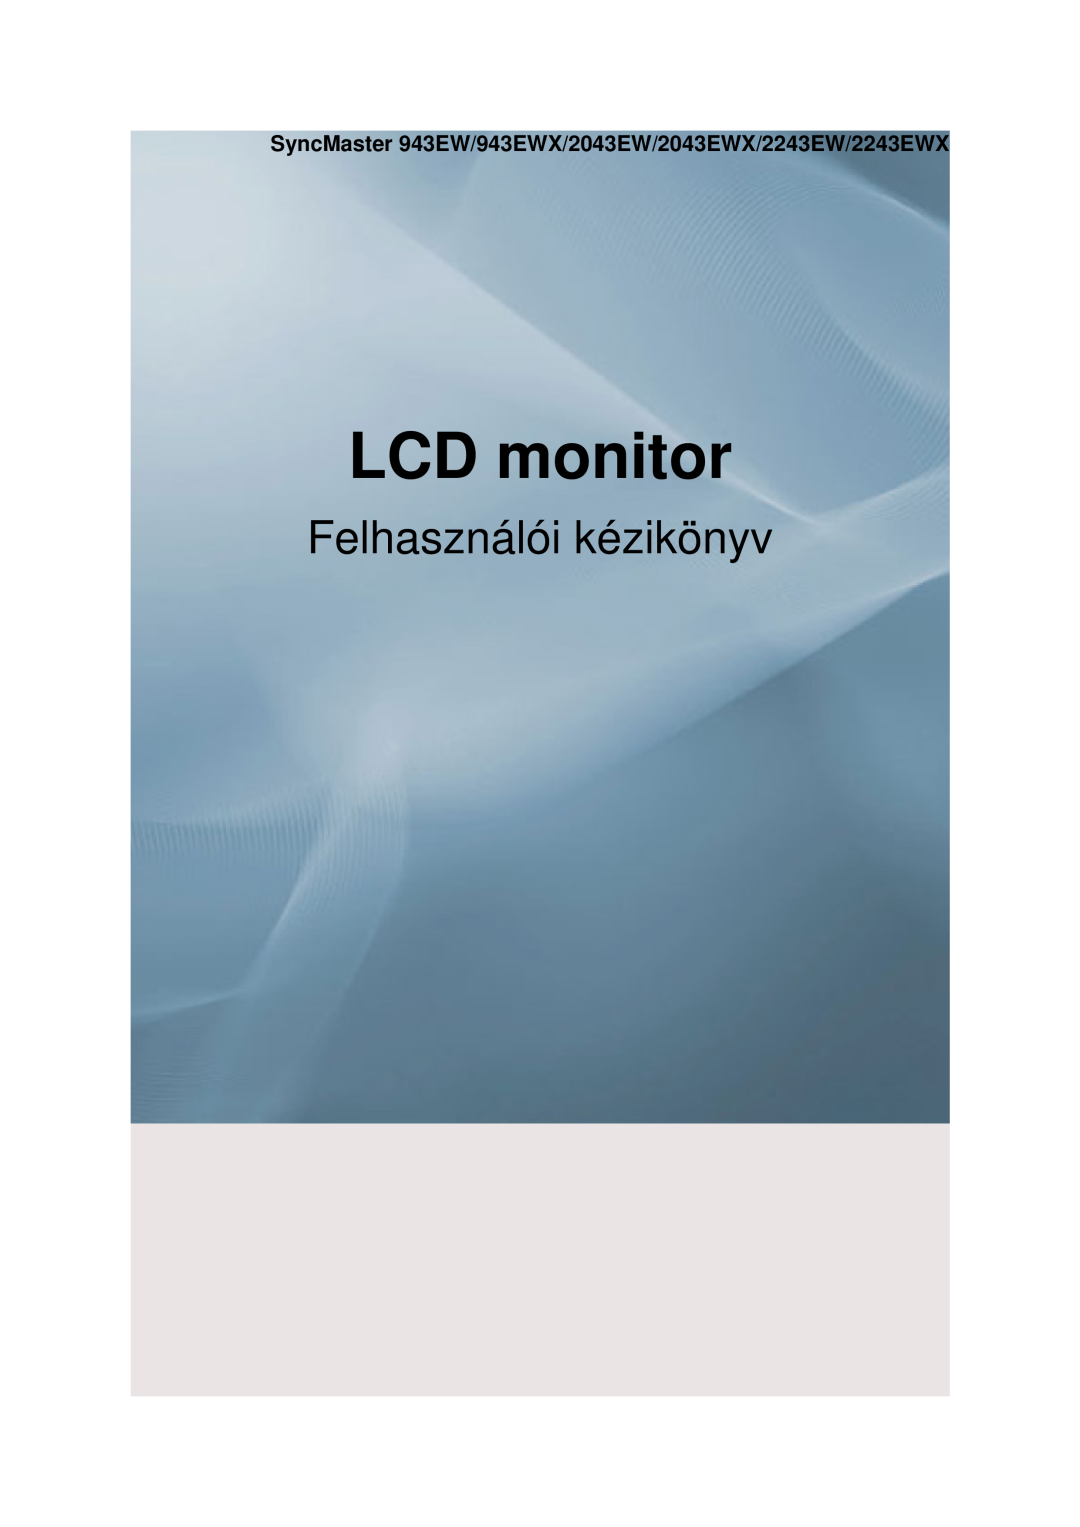 Samsung LS22MYDESC/EDC manual SyncMaster 943EW/943EWX/2043EW/2043EWX/2243EW/2243EWX, LCD monitor, Felhasználói kézikönyv 